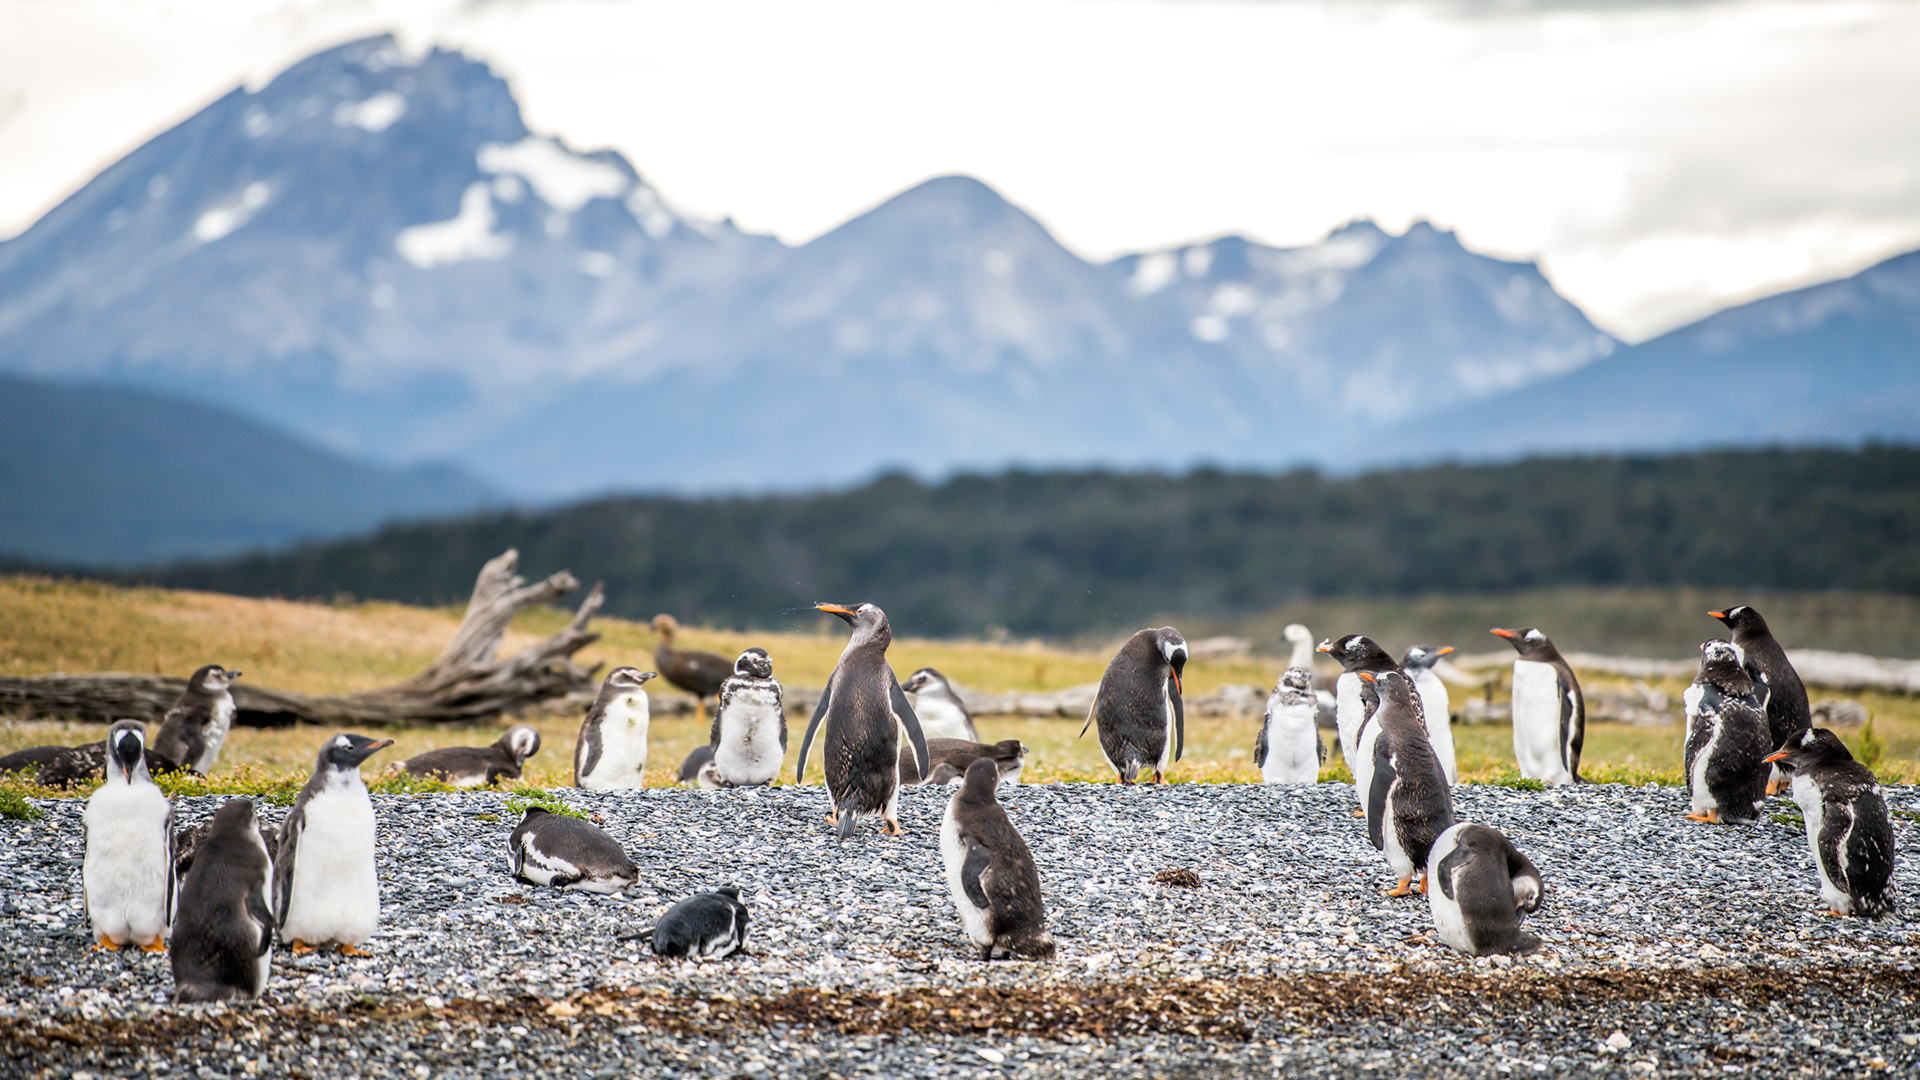 Los pingüinos de Magallanes conforman la rica biodiversidad marina de este imponente lugar (Rewilding Argentina / Joel Reyero)